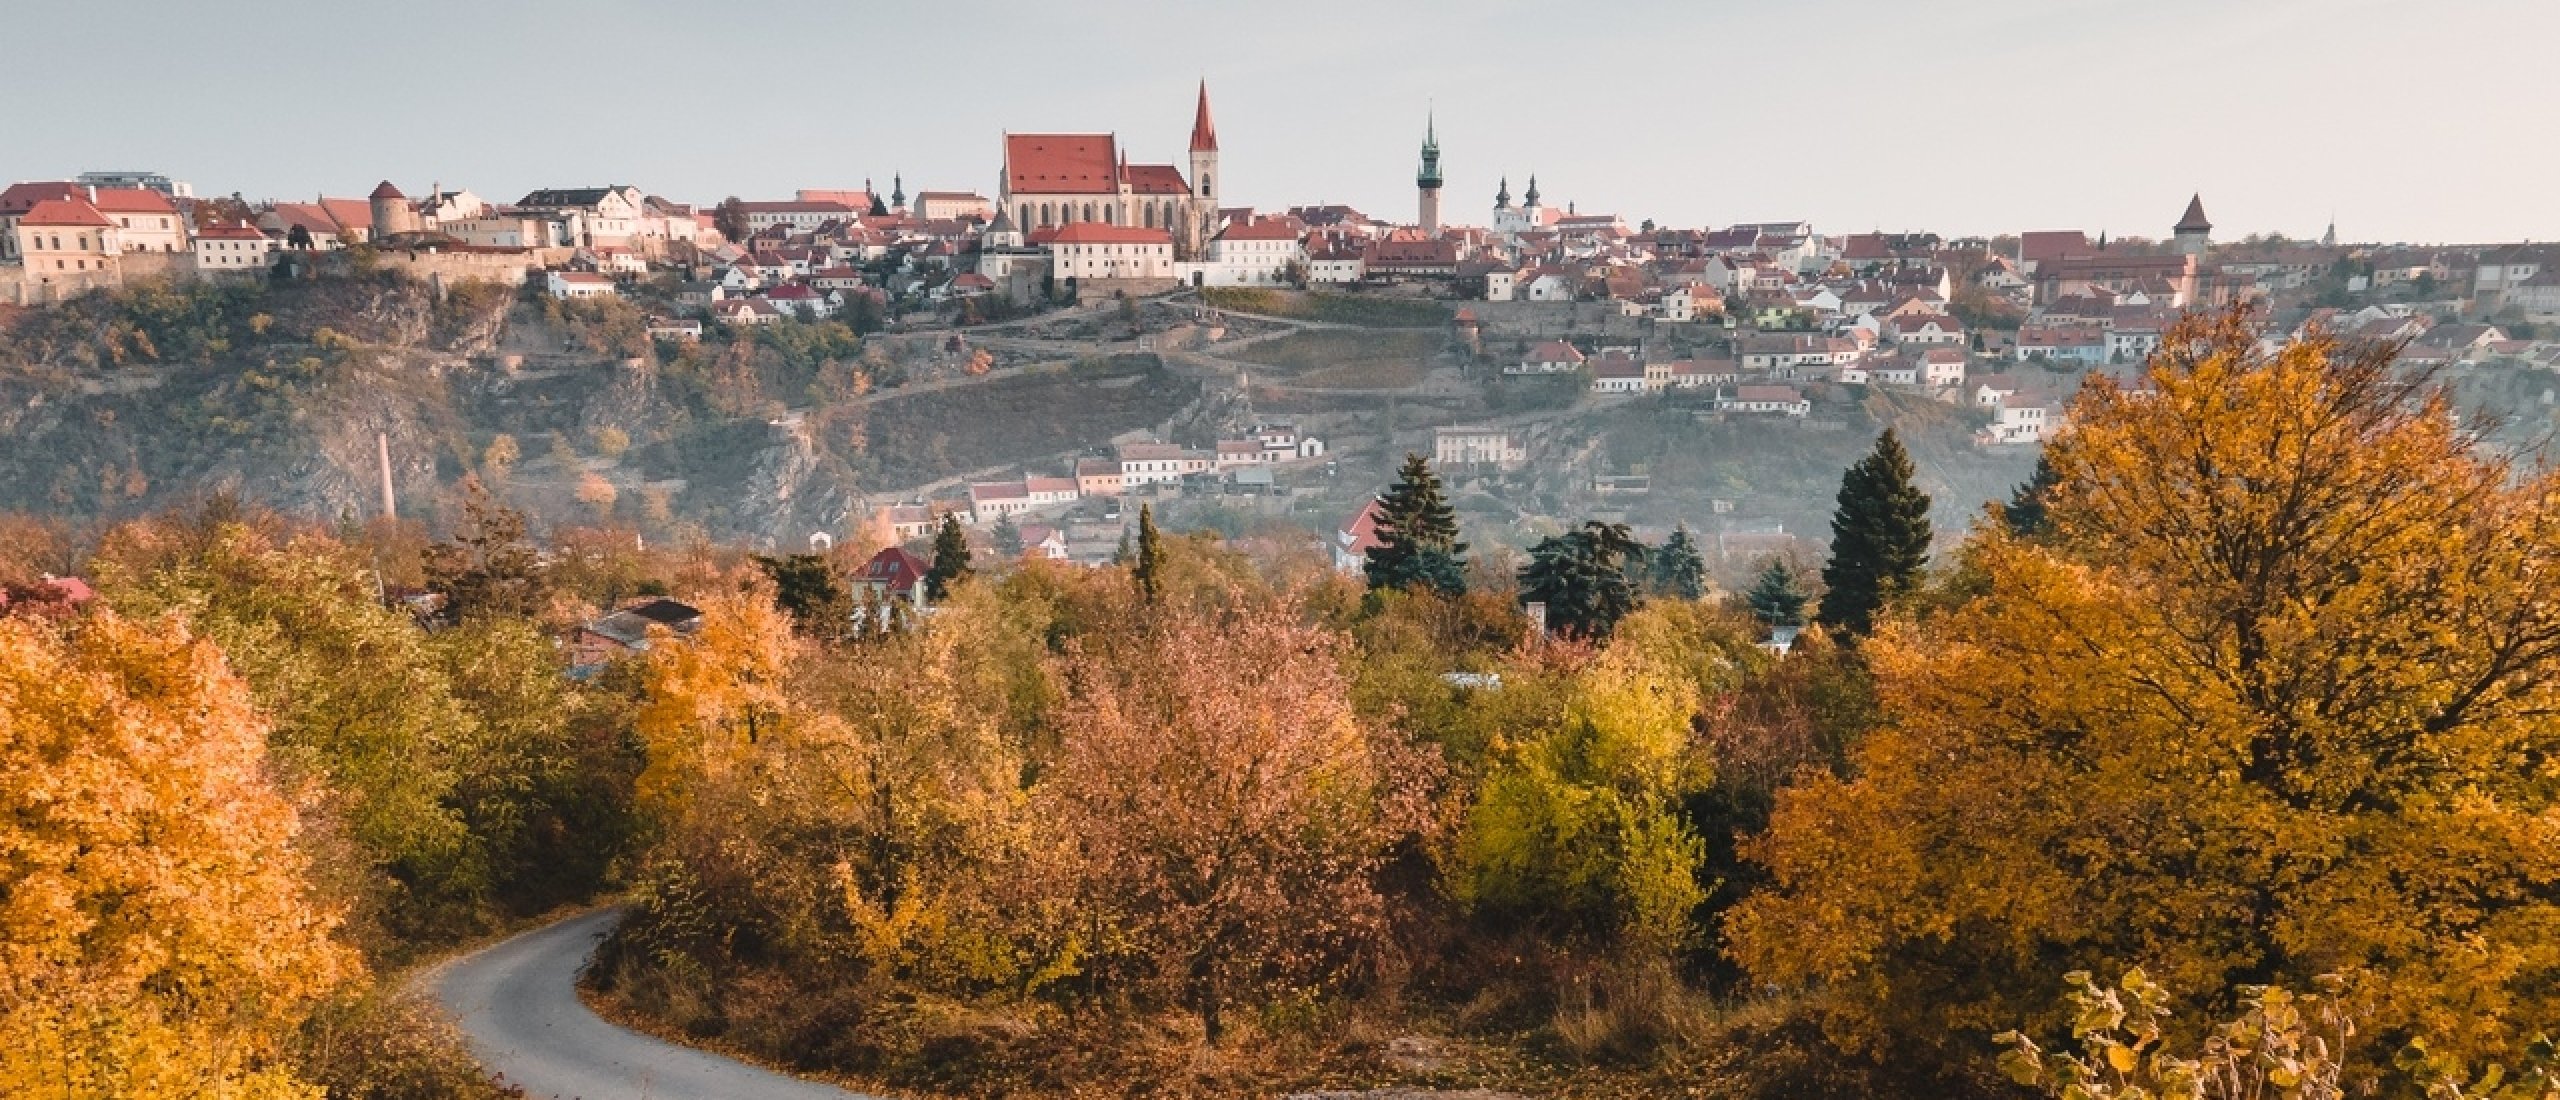 Znojmo in Zuid-Moravië